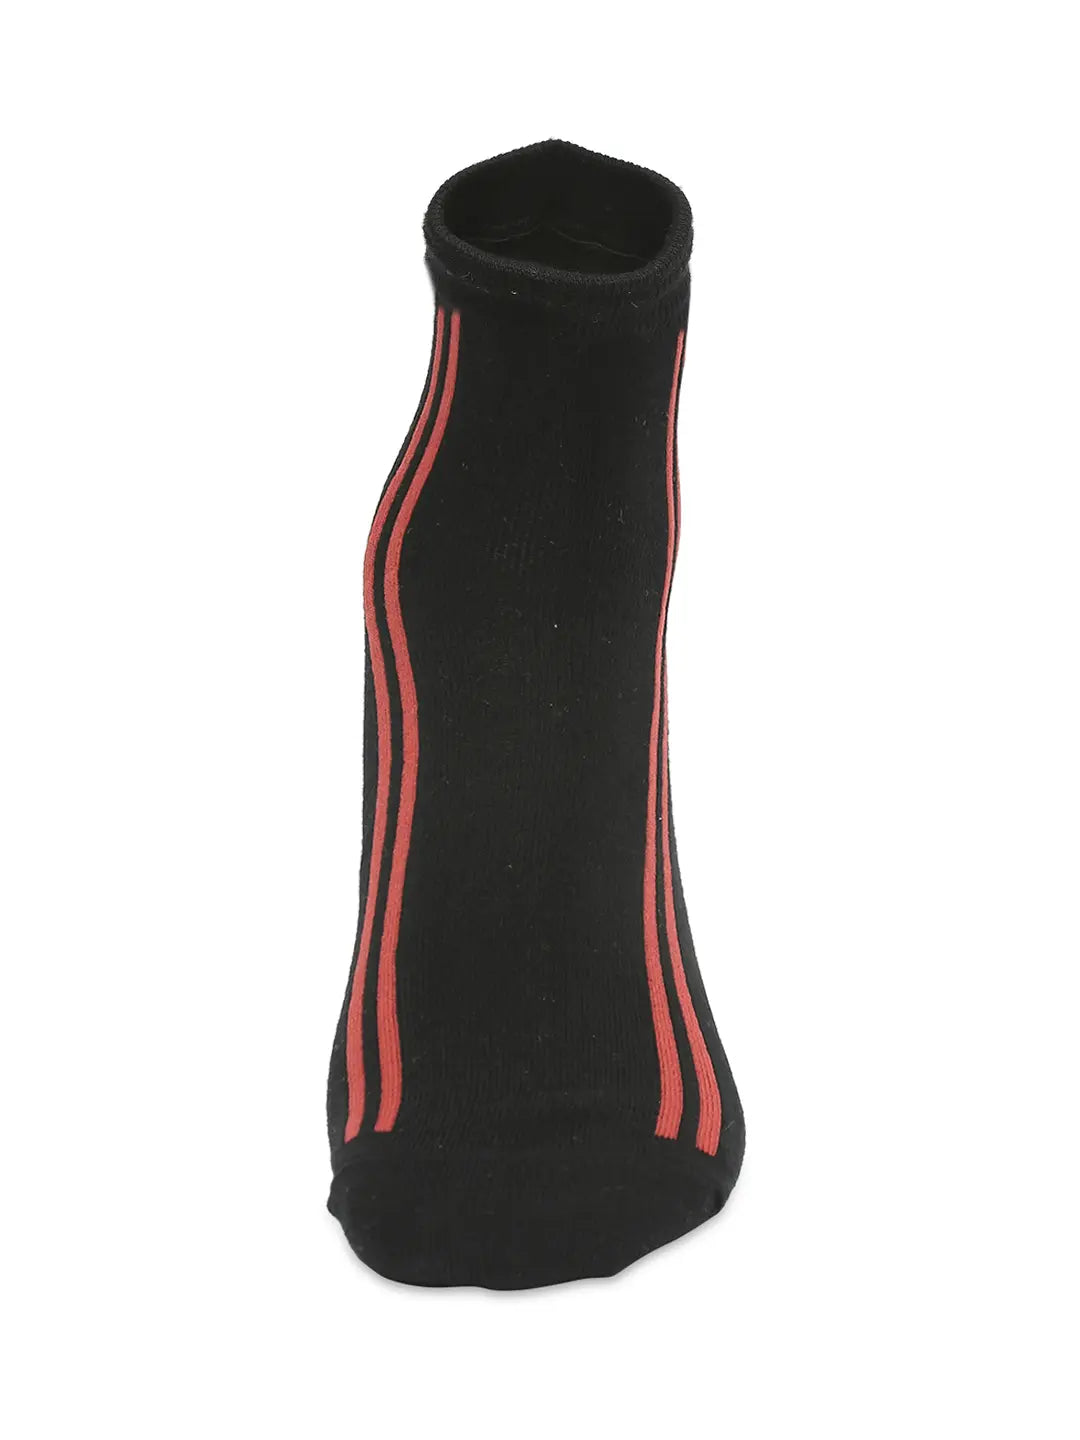 Men Premium White & Black Ankle Length Socks - Pack Of 2- Underjeans by Spykar